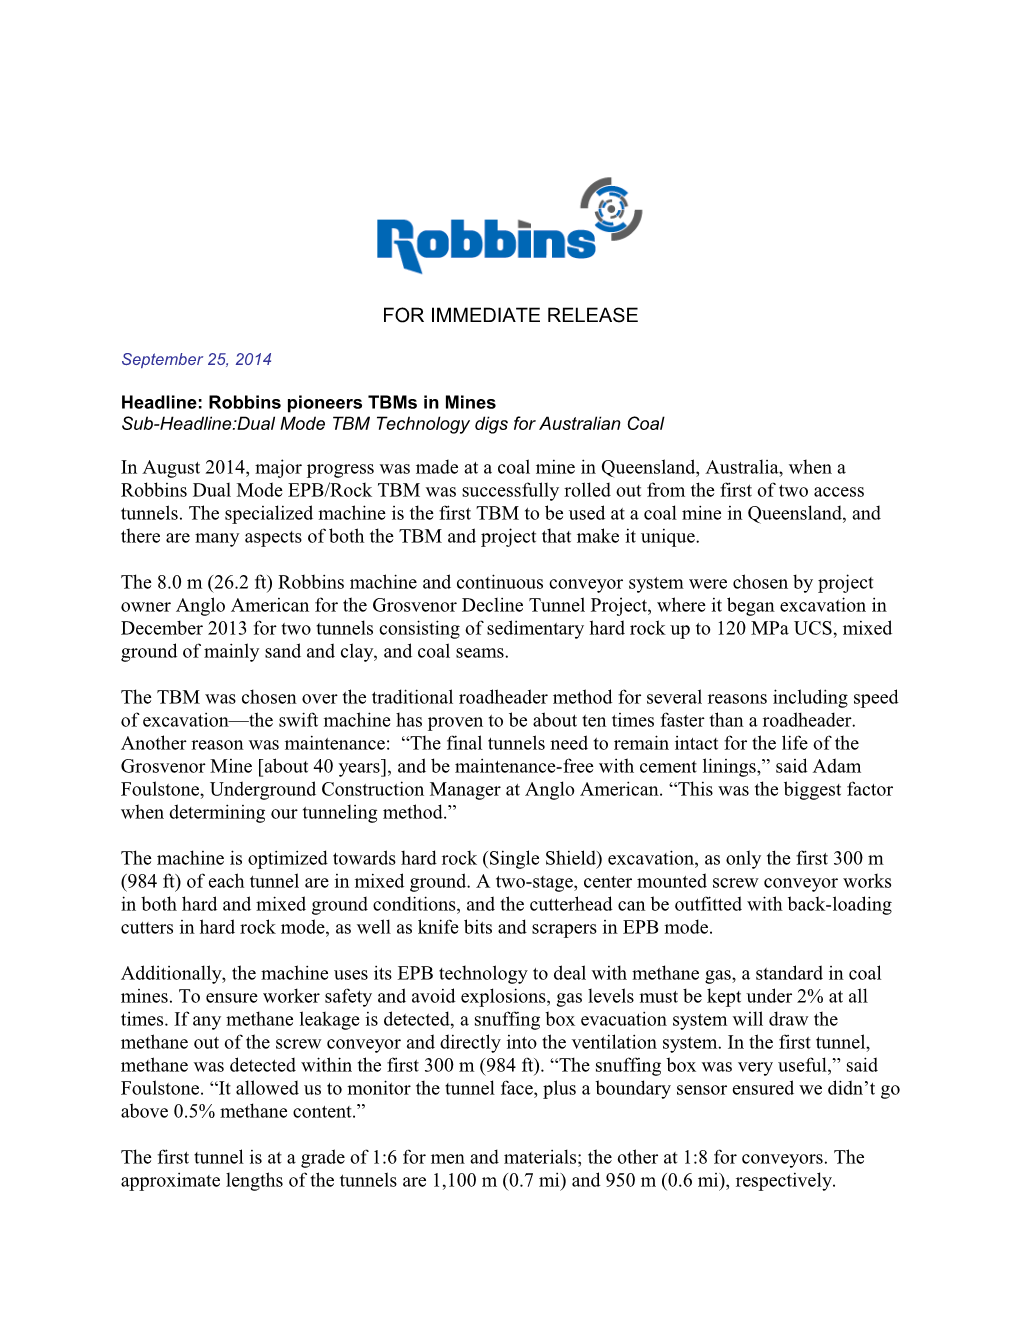 Headline: Robbins Pioneers Tbms in Mines